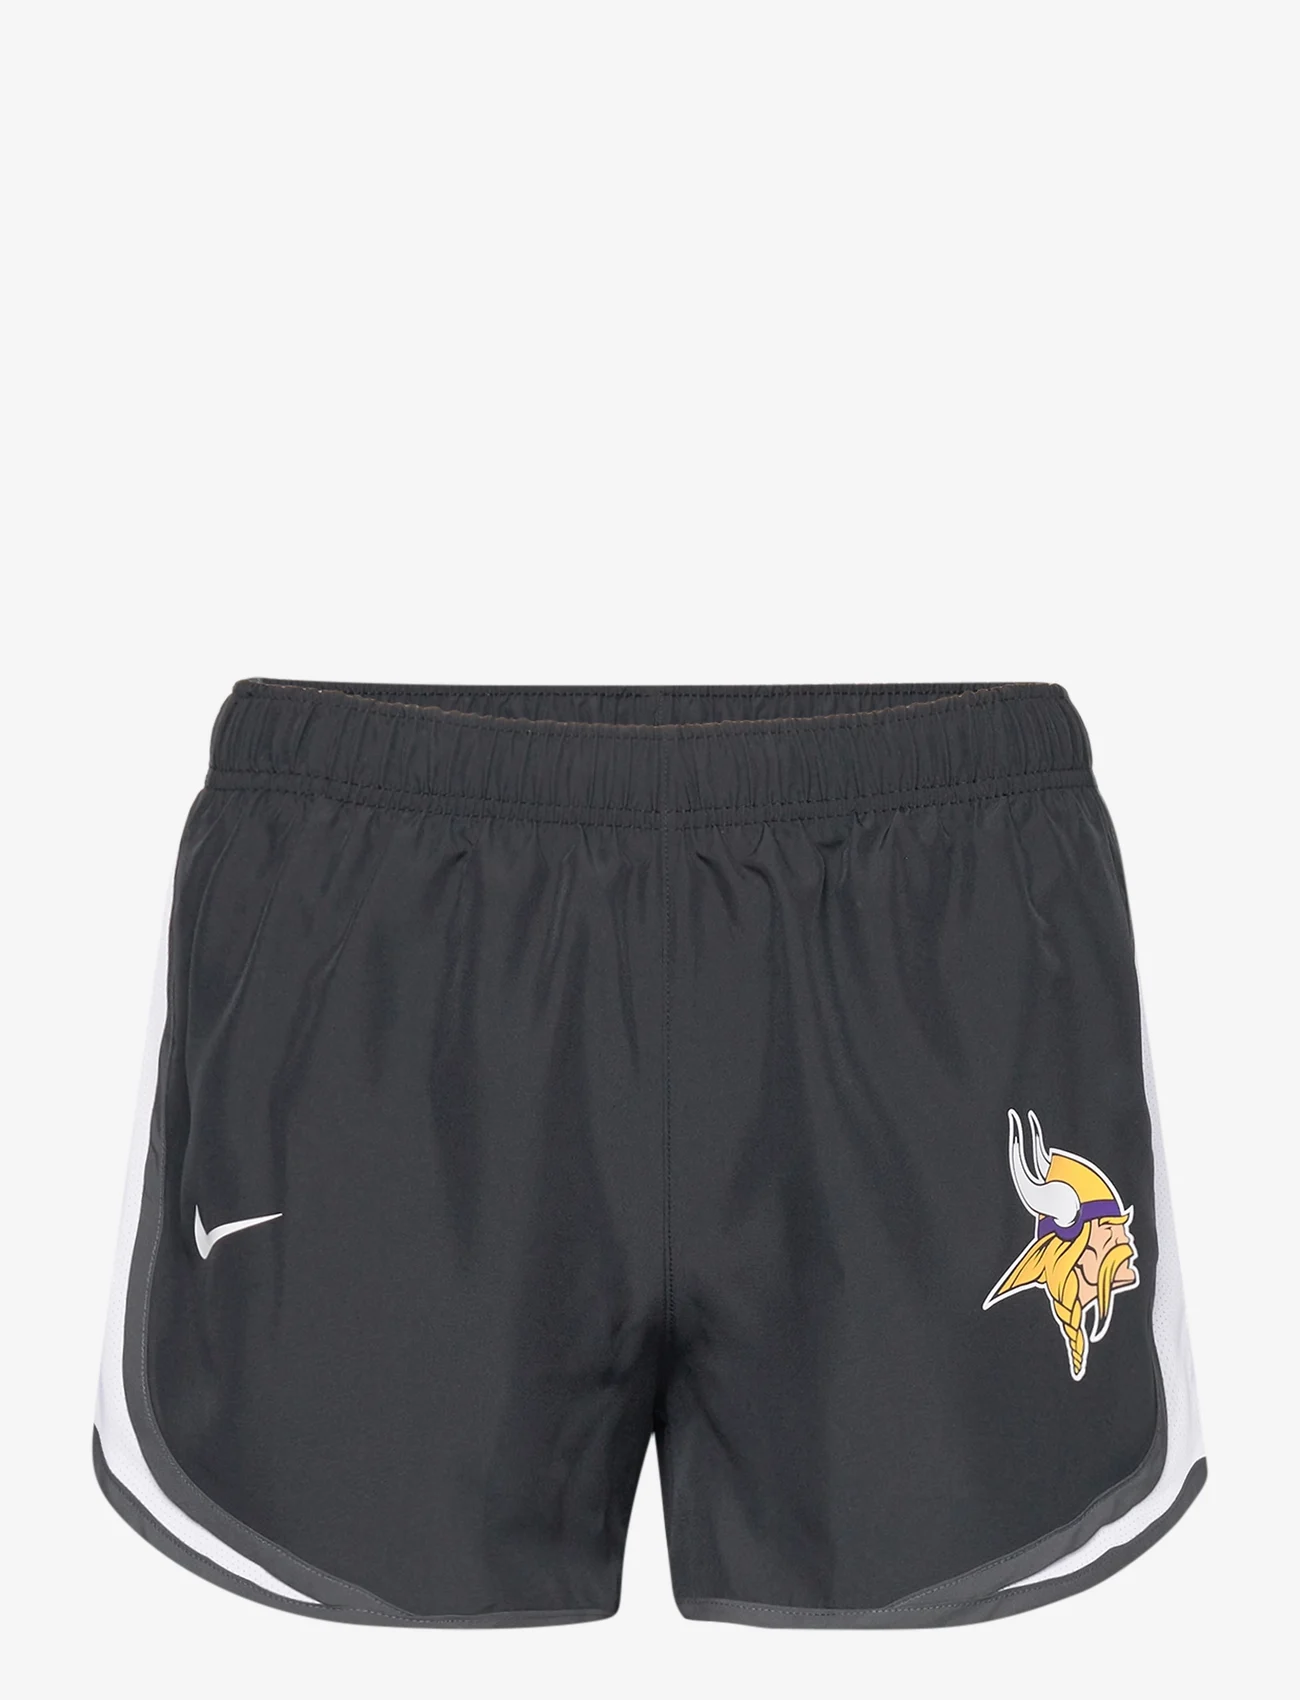 NIKE Fan Gear - Nike NFL Minnesota Vikings Short - sports shorts - black/white/anthracite - 0